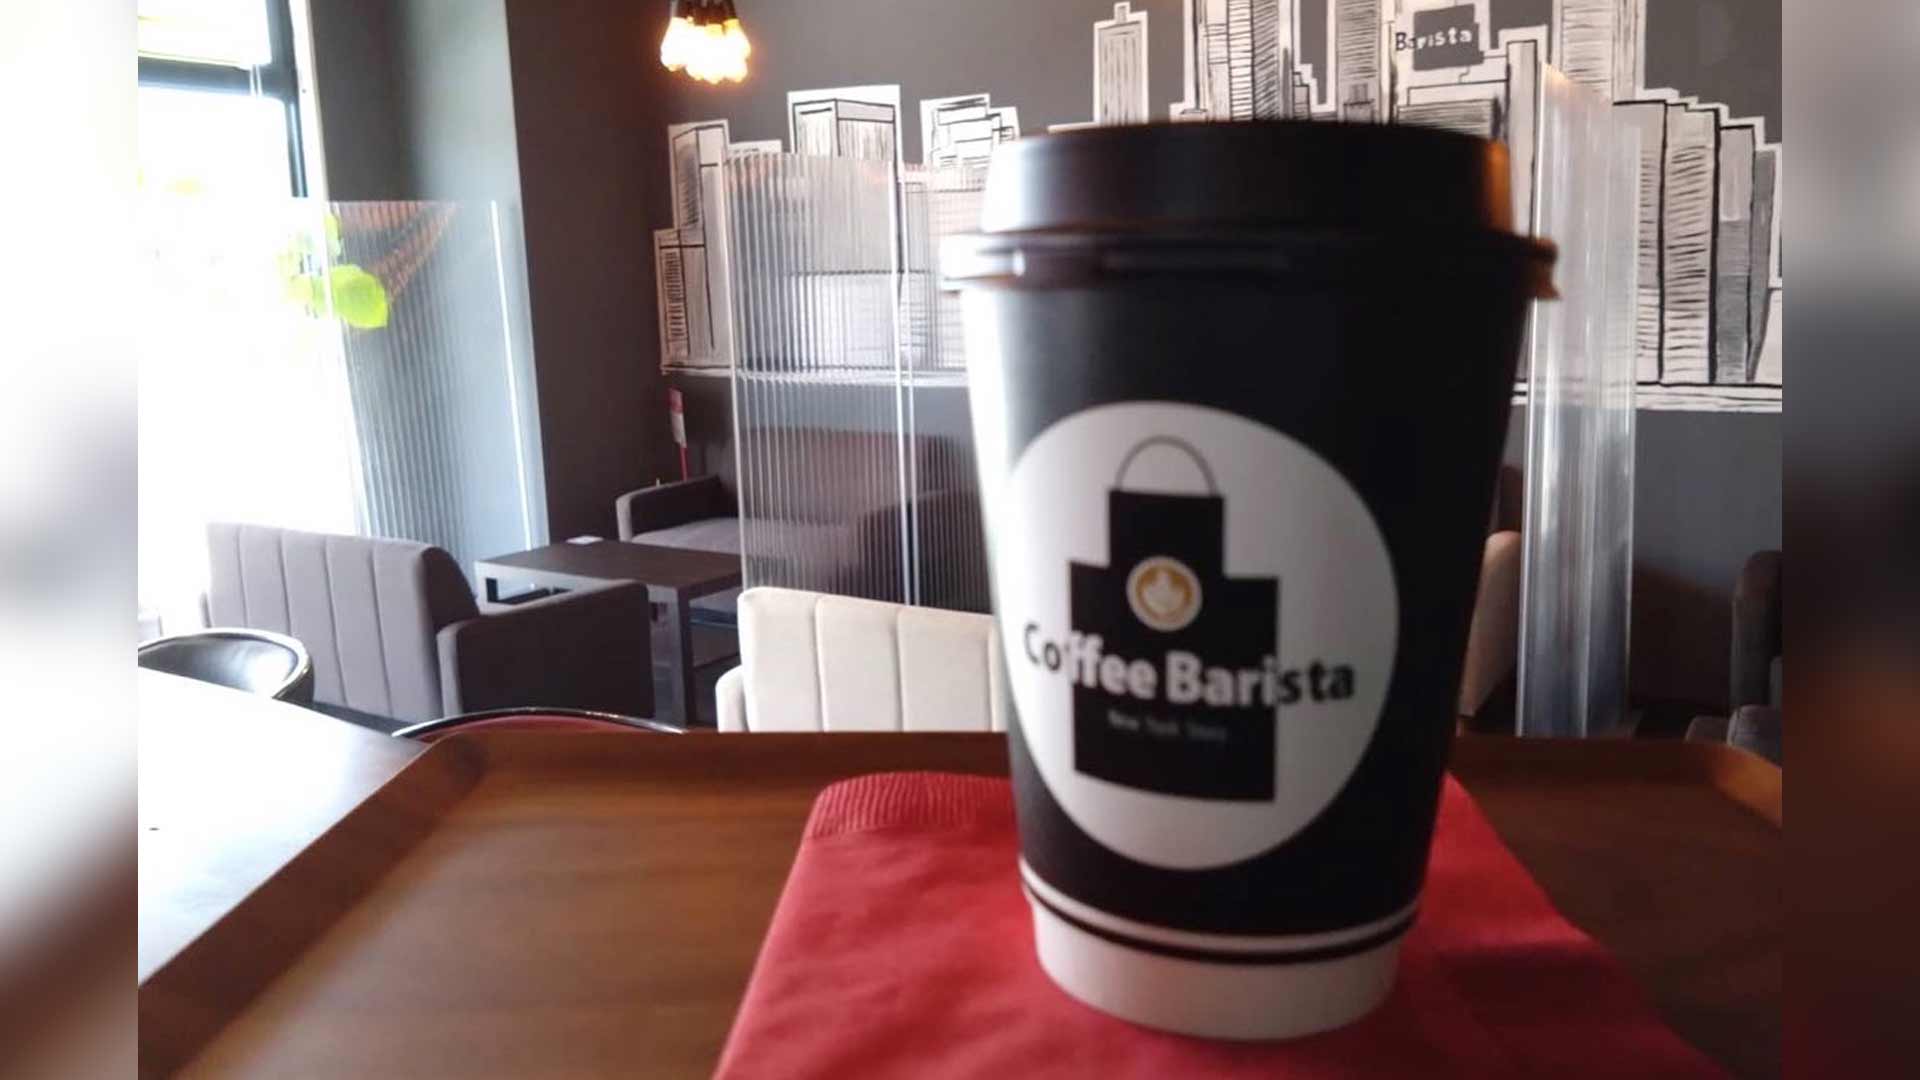 Coffee Barista cafe | コーヒーバリスタ宮古島のカフェ | コーヒー